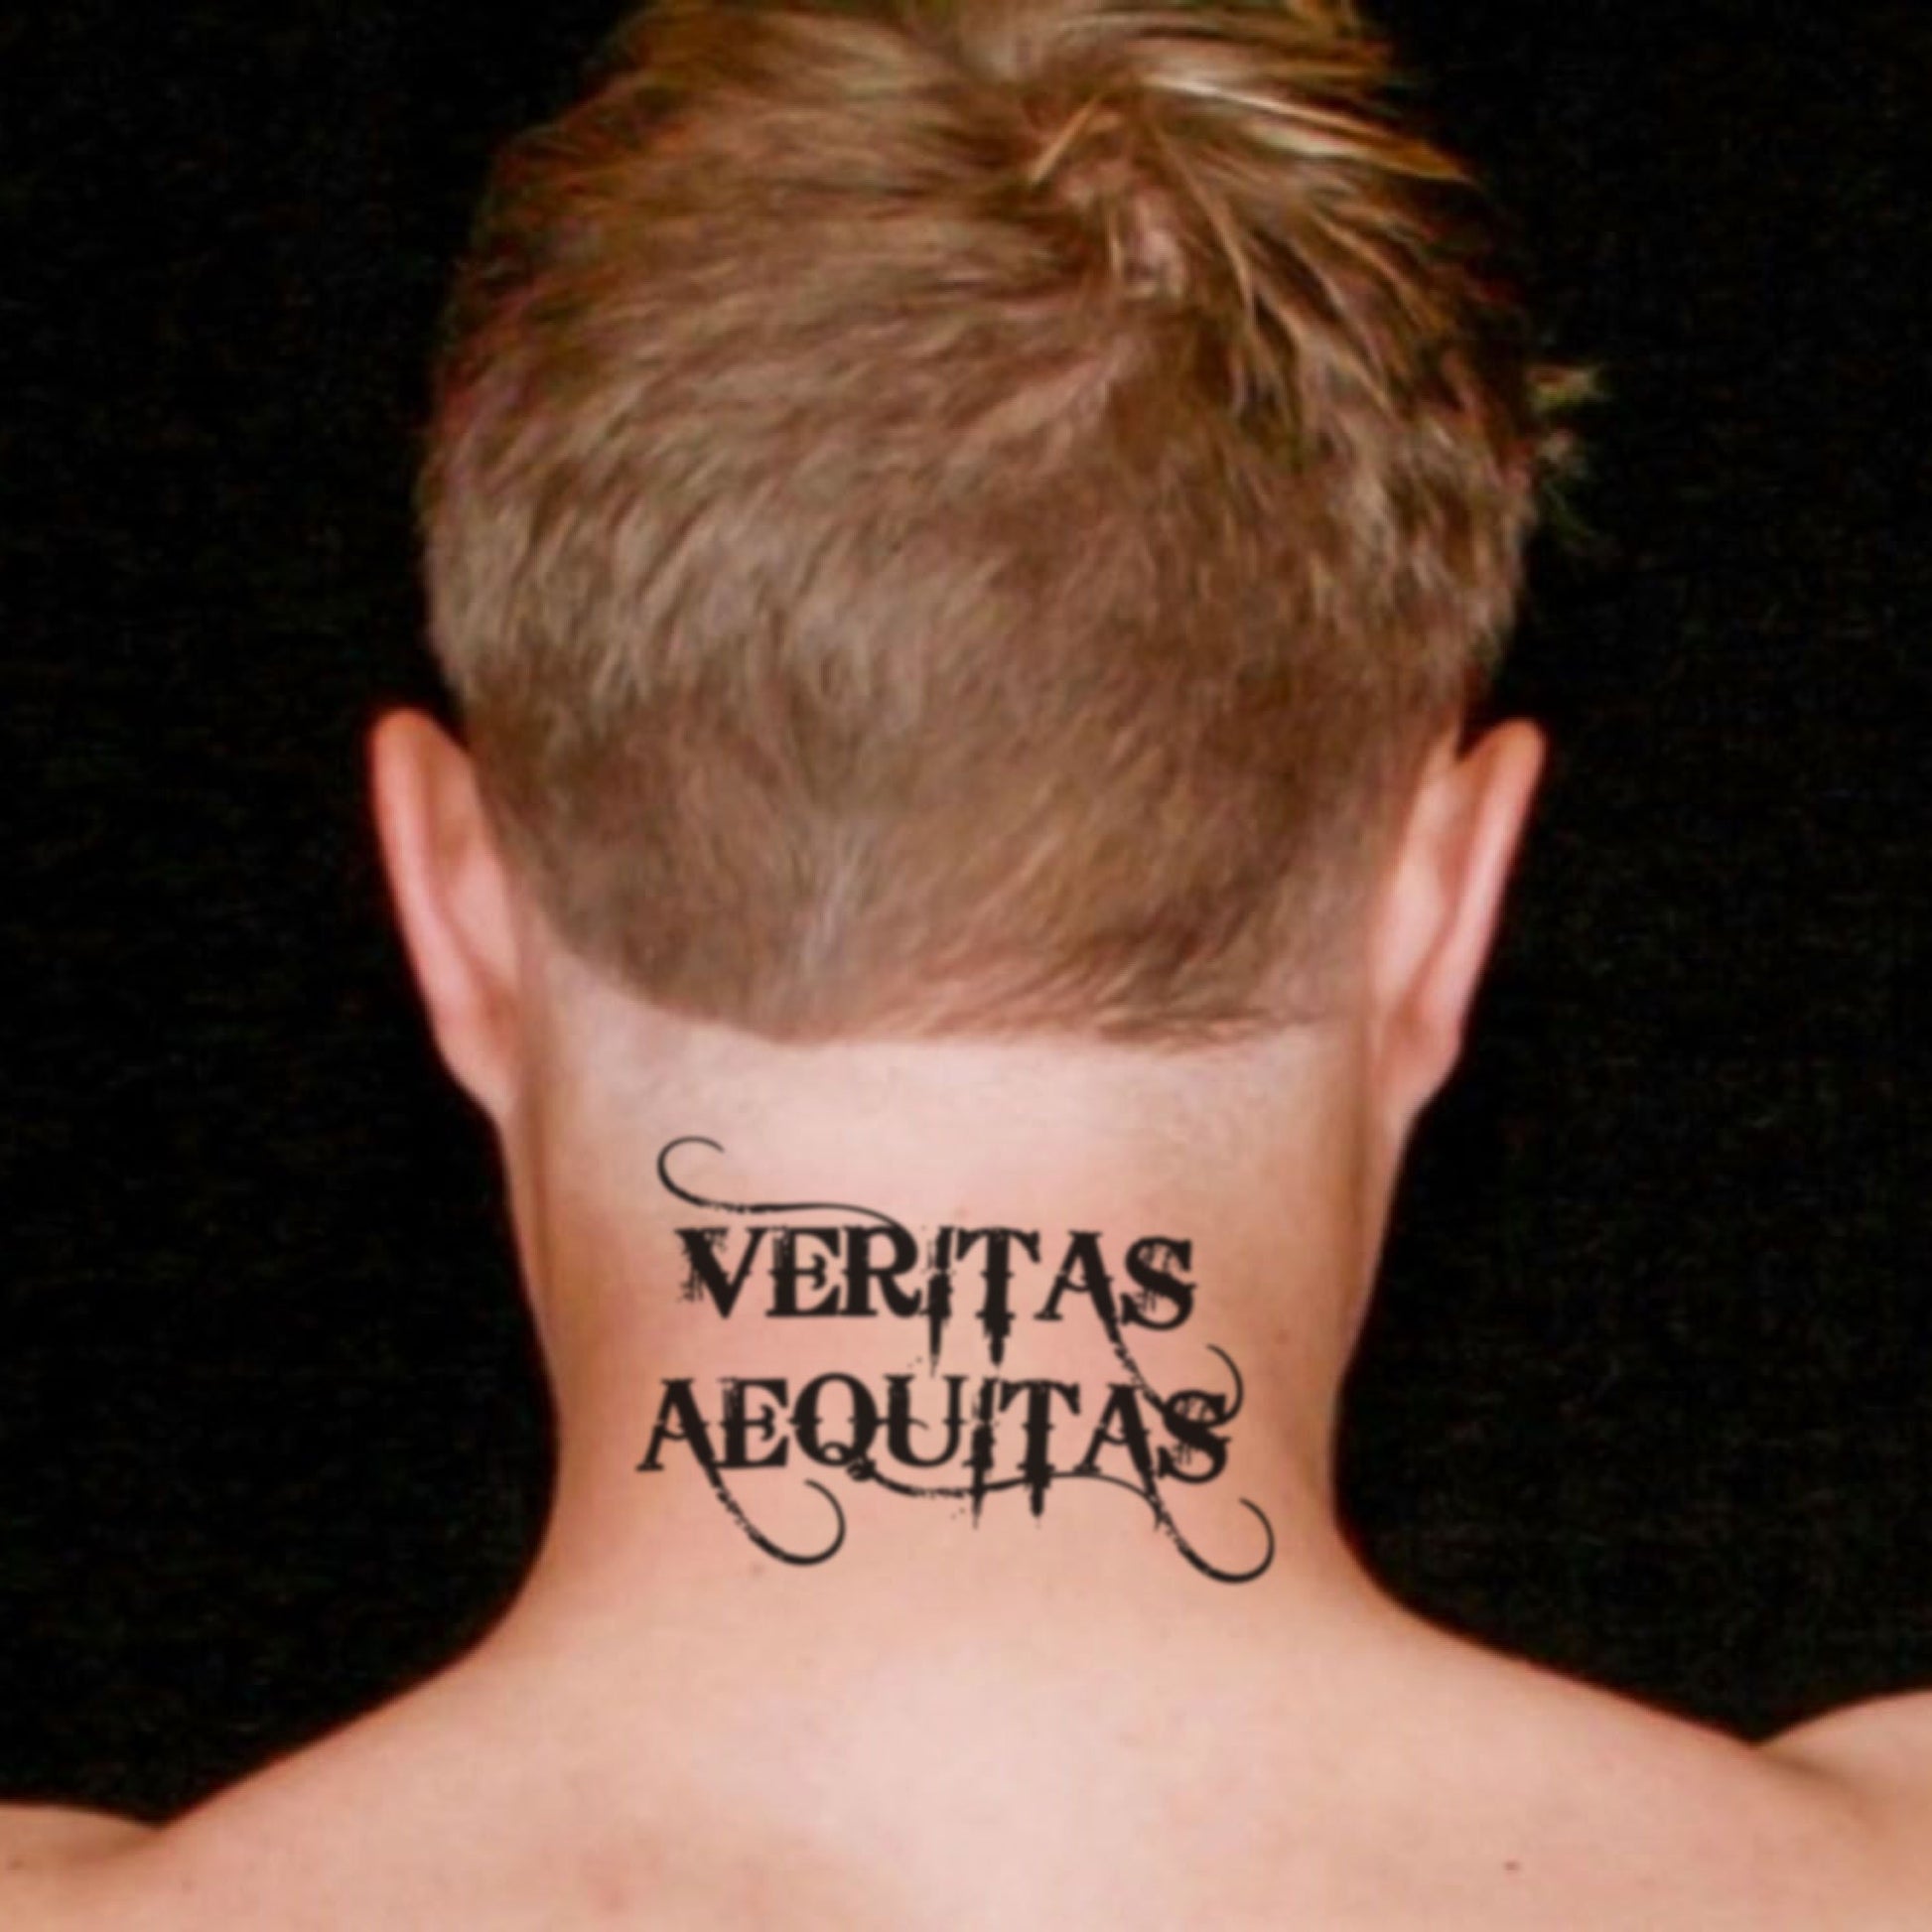 fake medium veritas aequitas boondock saints lettering temporary tattoo sticker design idea on neck